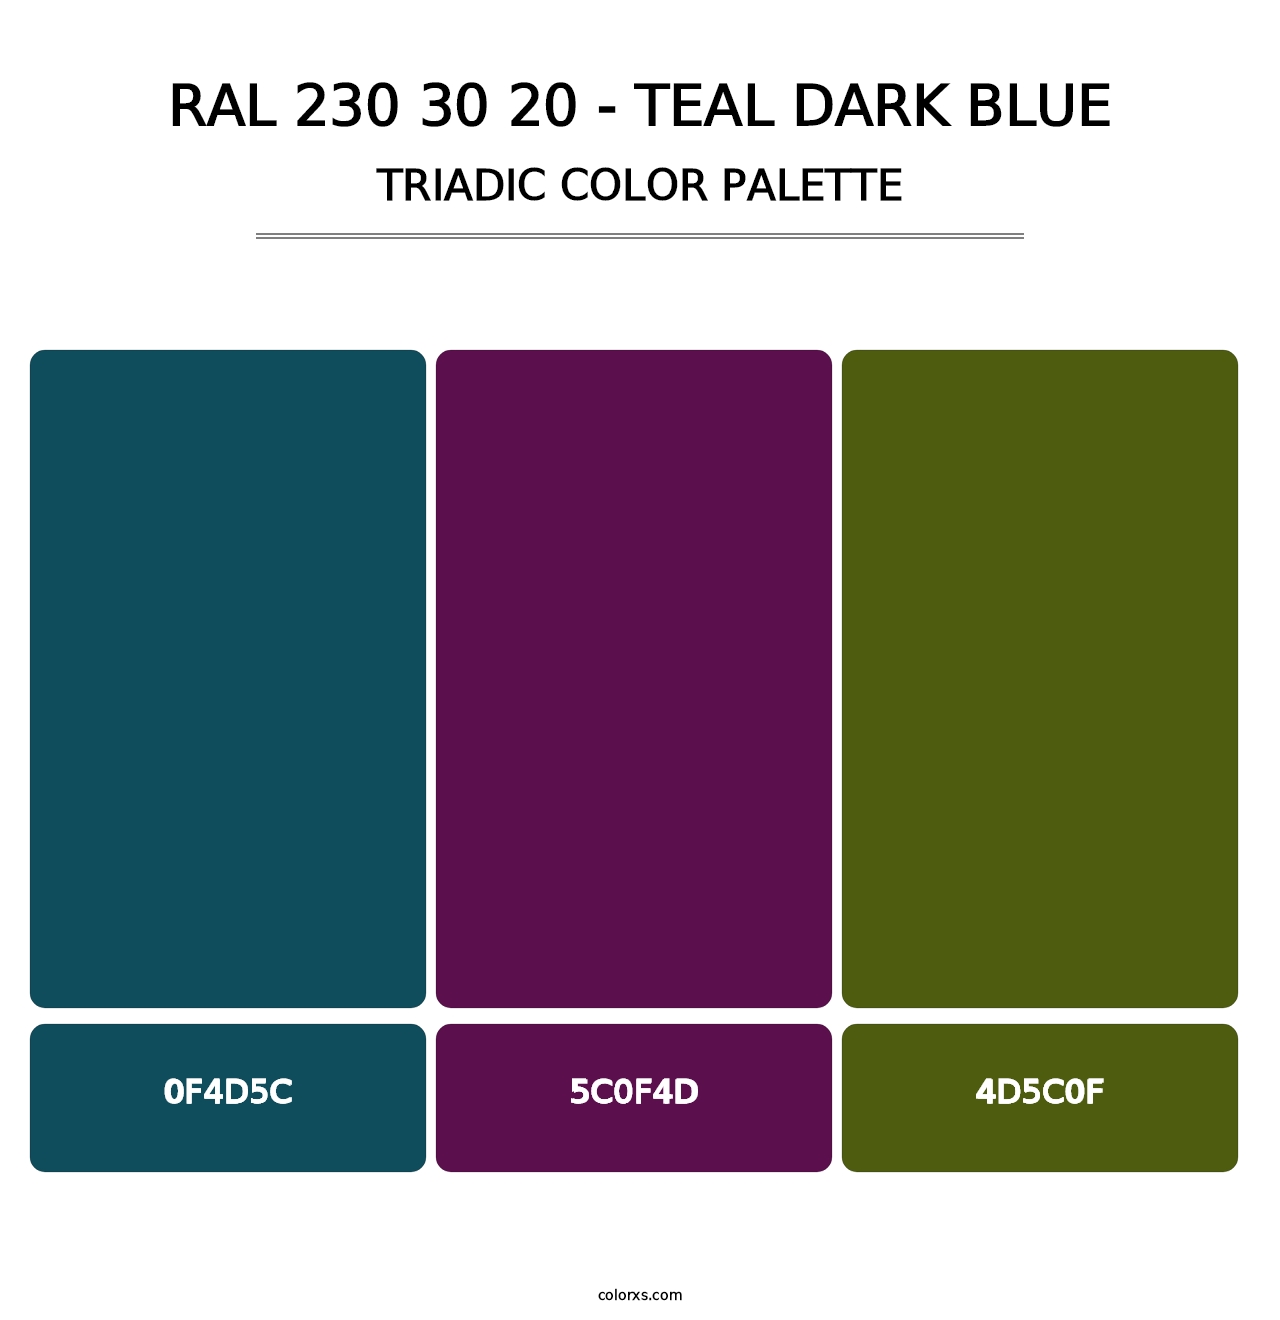 RAL 230 30 20 - Teal Dark Blue - Triadic Color Palette